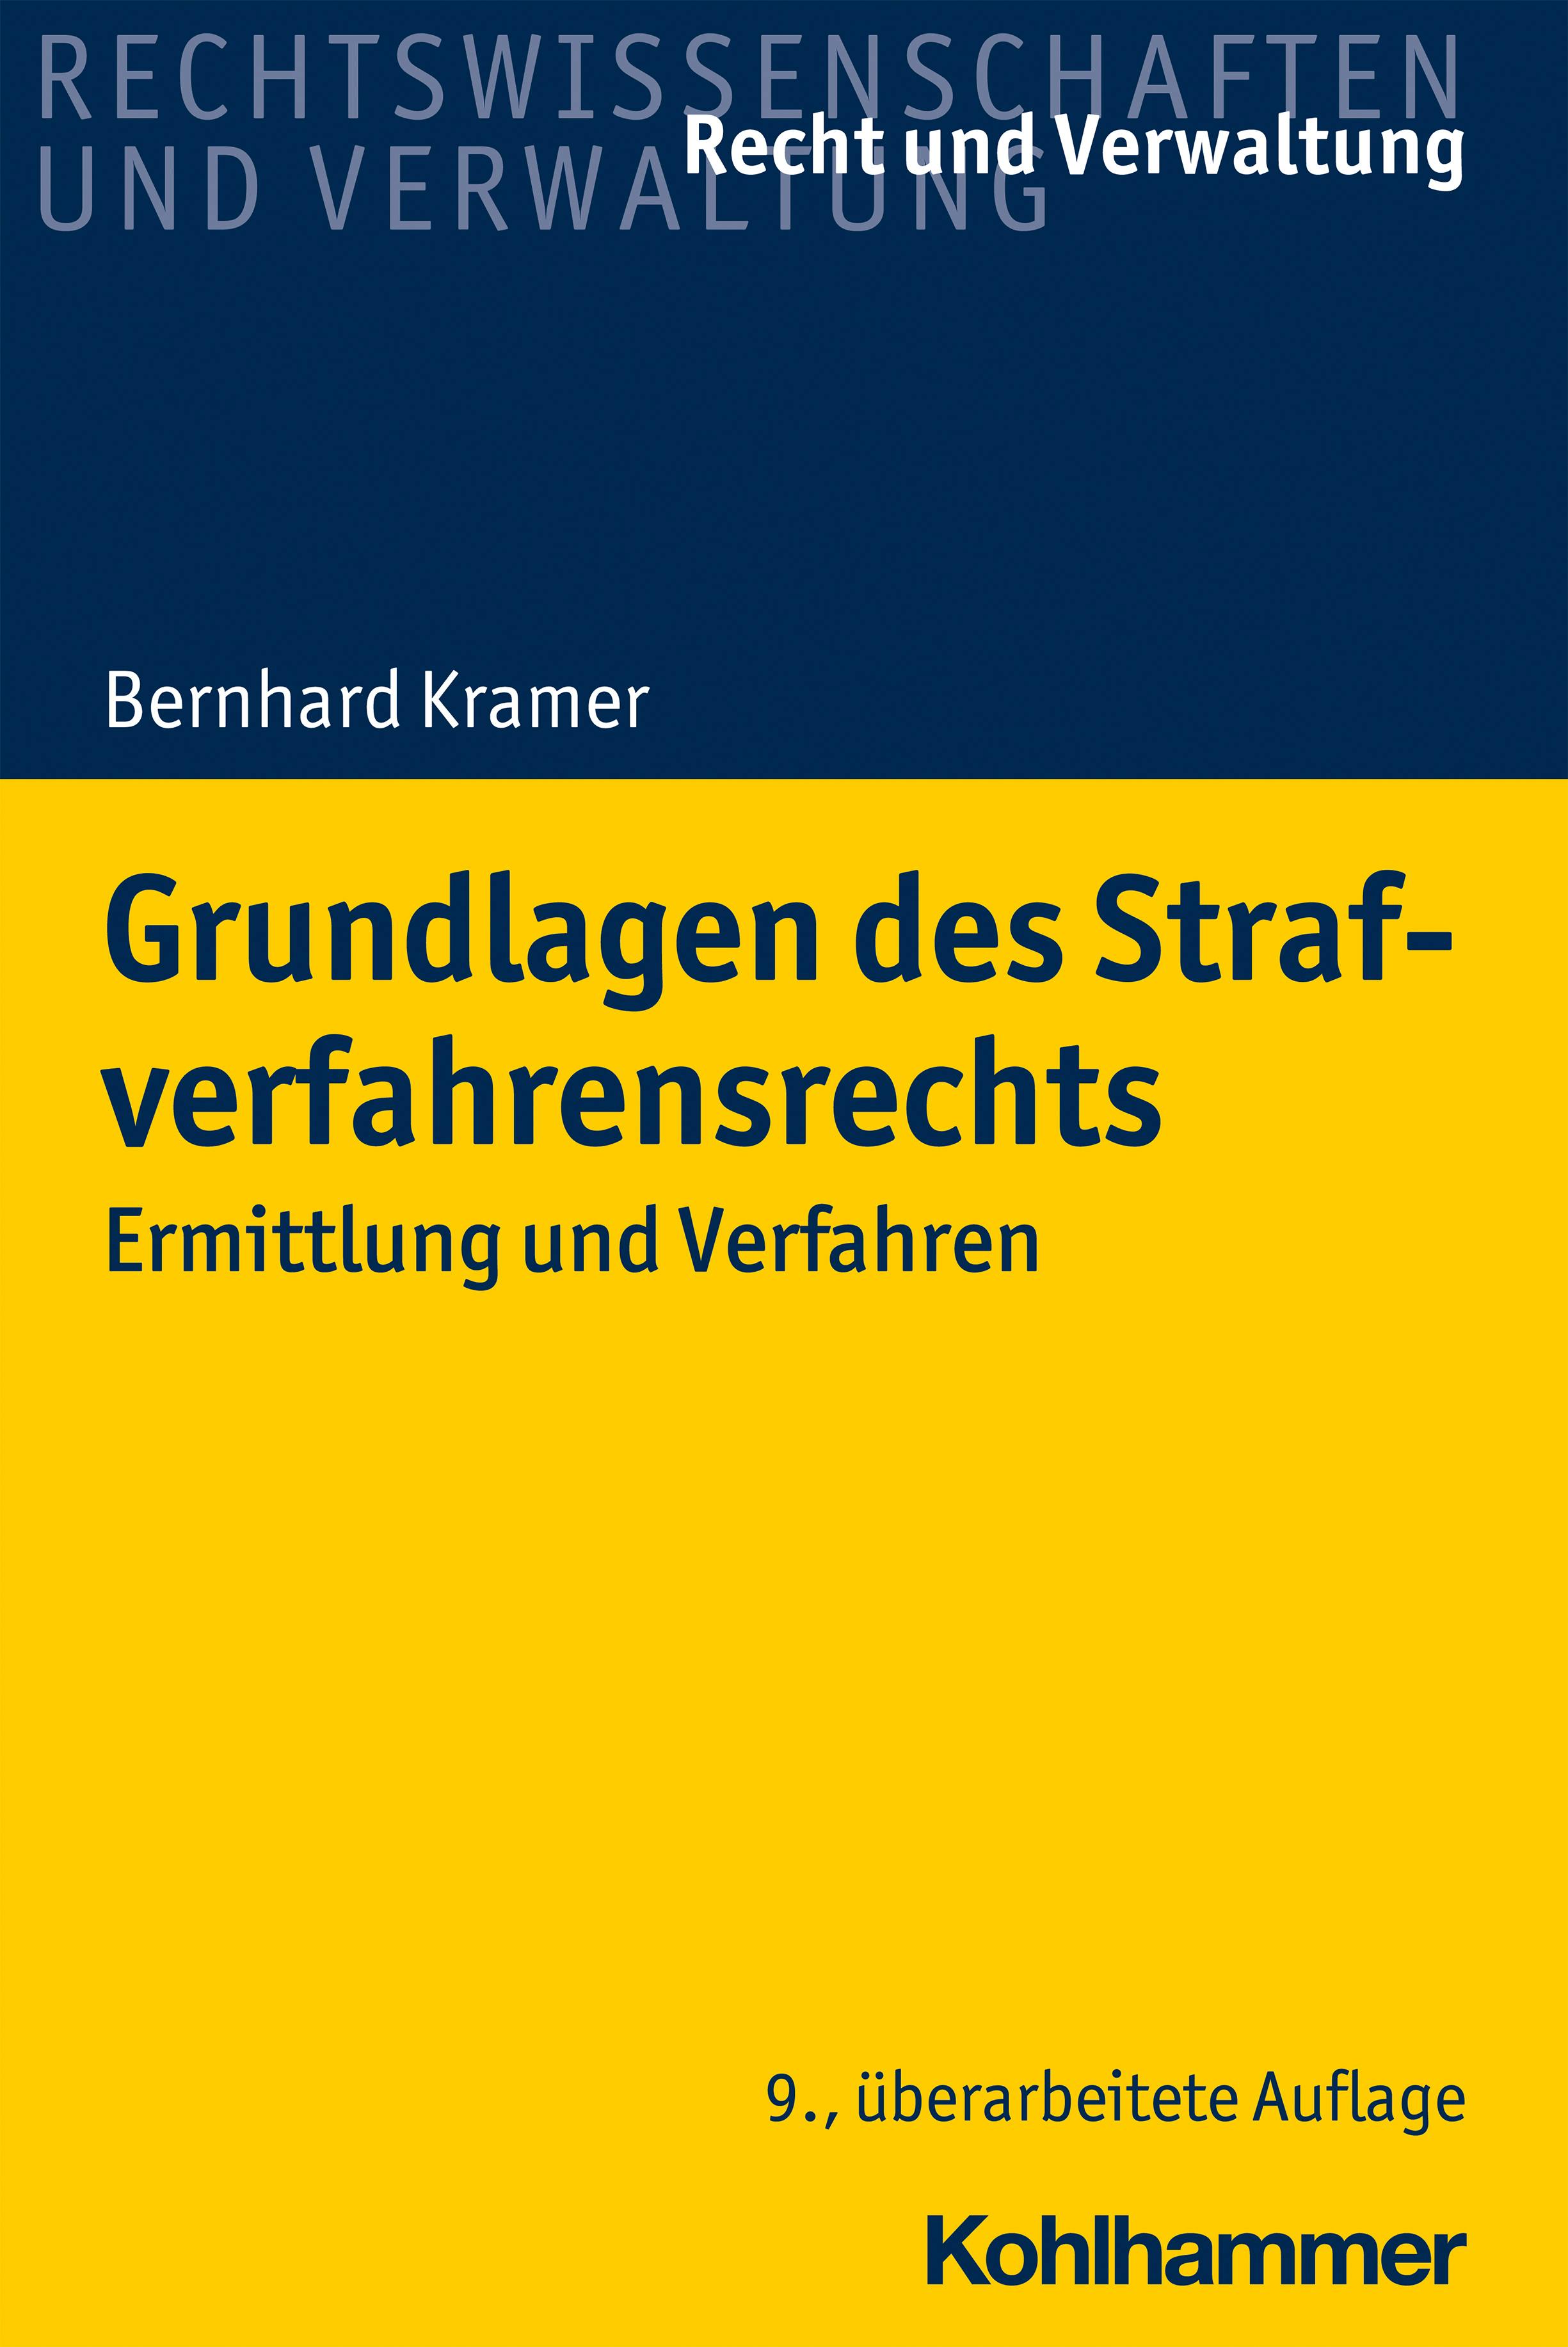 Grundlagen des Strafverfahrensrechts: Ermittlung und Verfahren - Bernhard Kramer